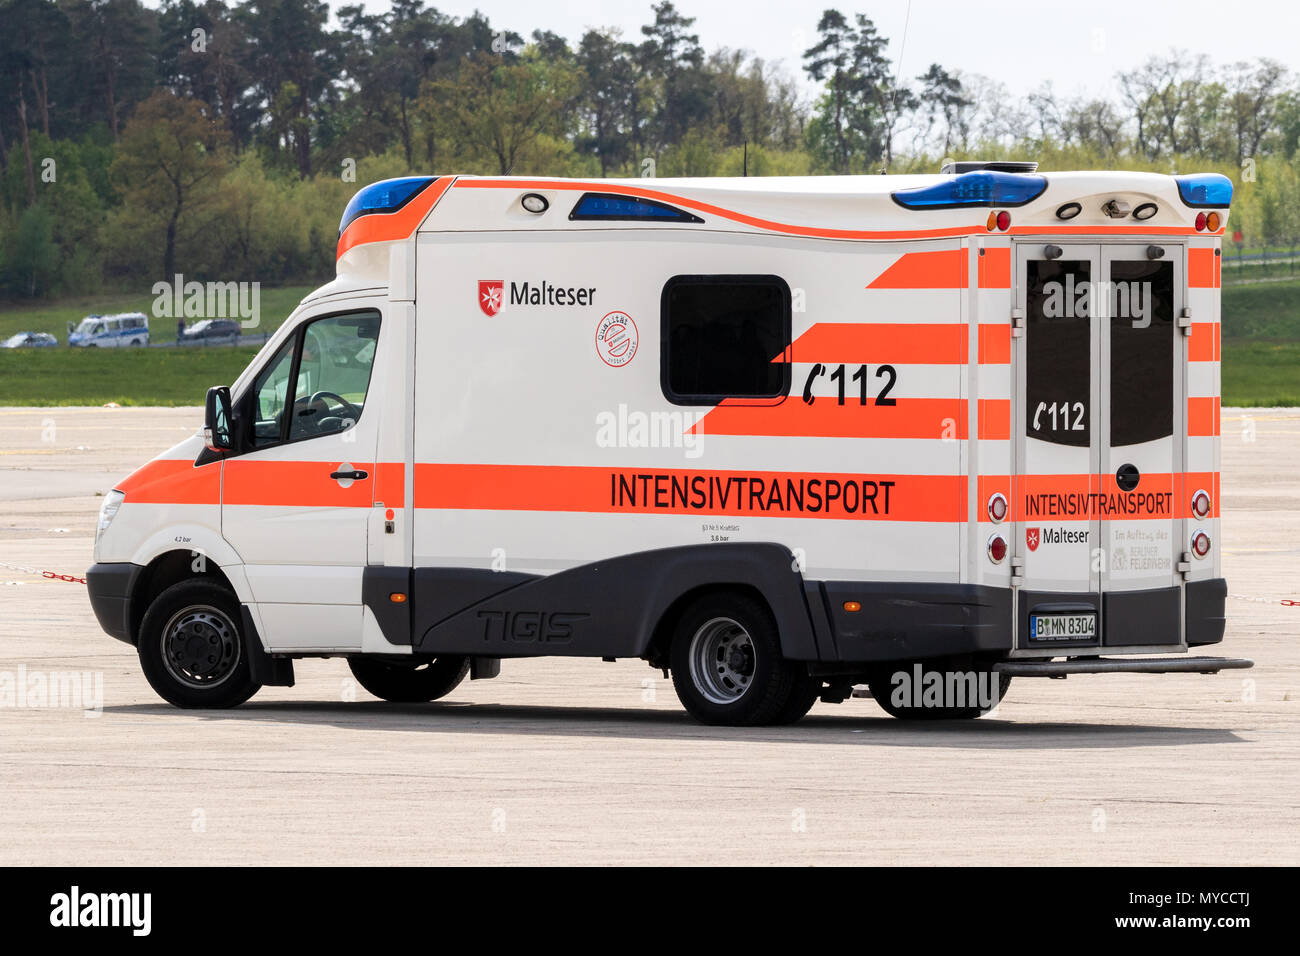 BERLIN, ALLEMAGNE - Apr 27, 2018 : soins médicaux d'urgence ambulance Malteser véhicule de service au Berlin-Schonefeld airport. Banque D'Images